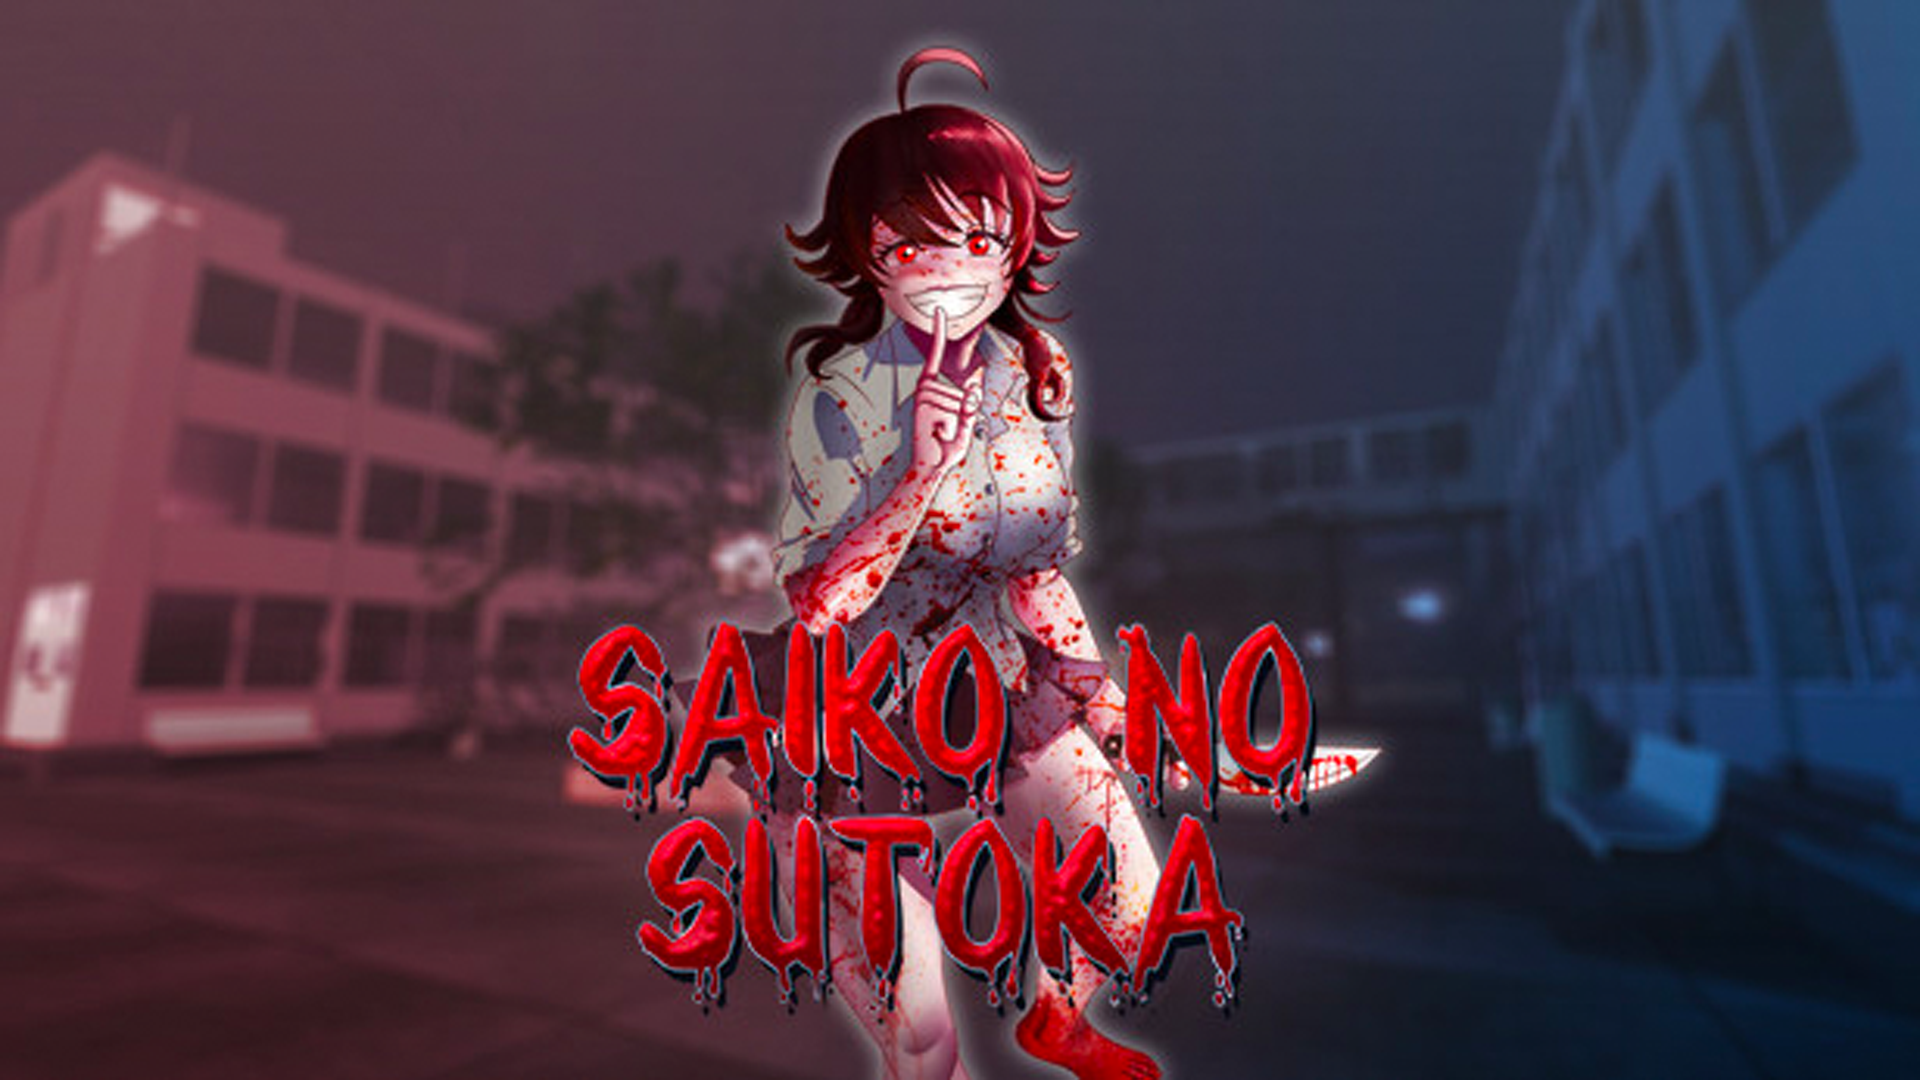 Última Versão de Saiko no sutoka 2.3.5 para Android